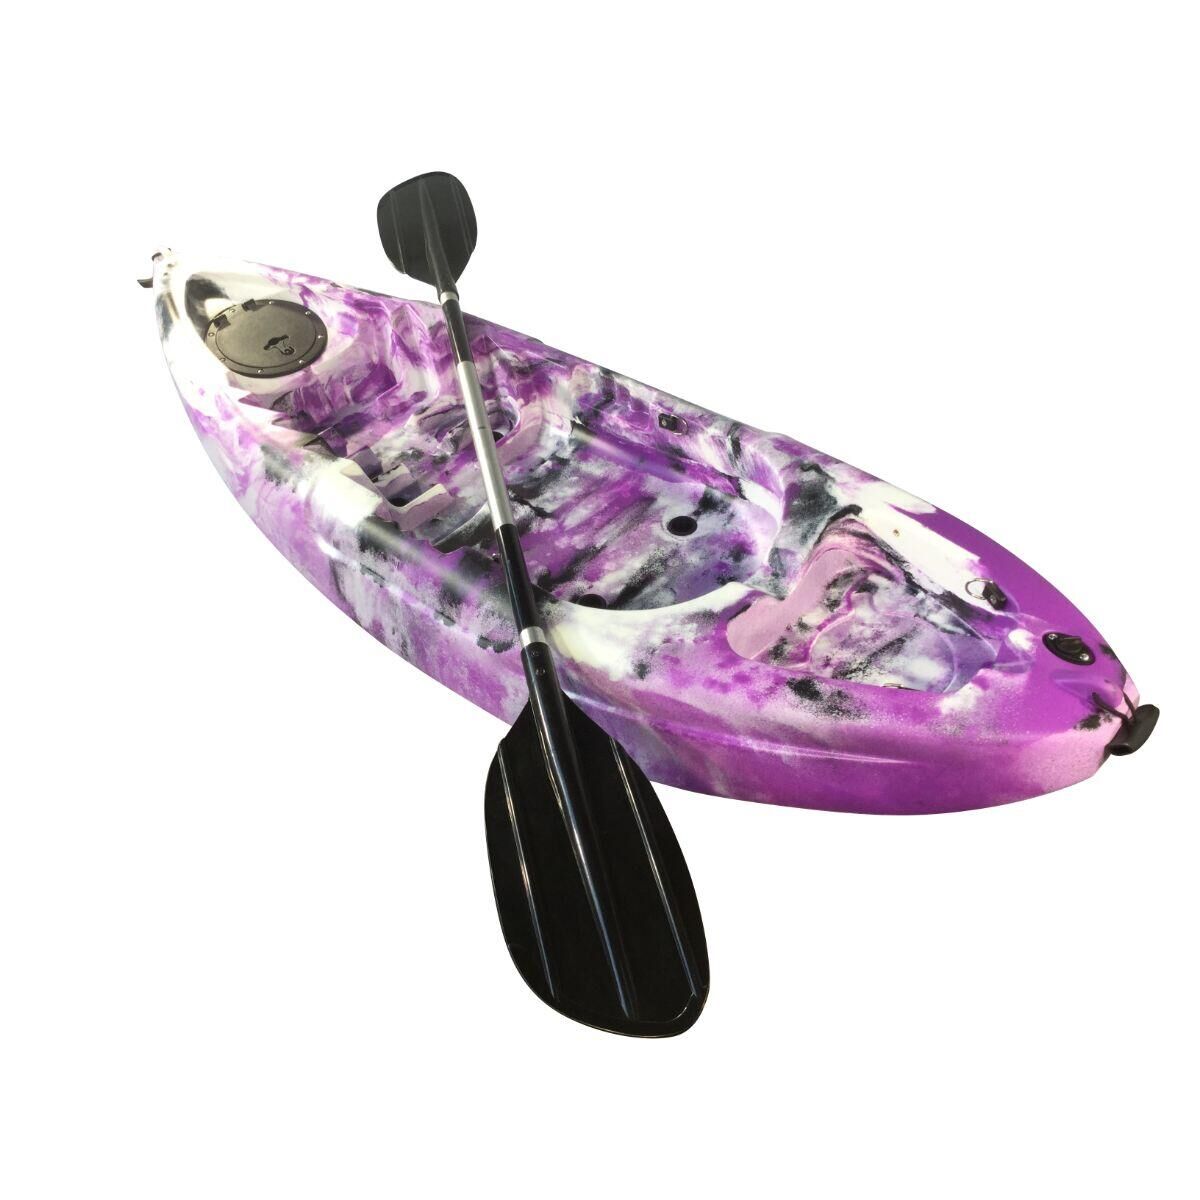 CAMBRIDGE KAYAKS Cambridge Kayaks Guppy Single sit on top Junior kayak Pink